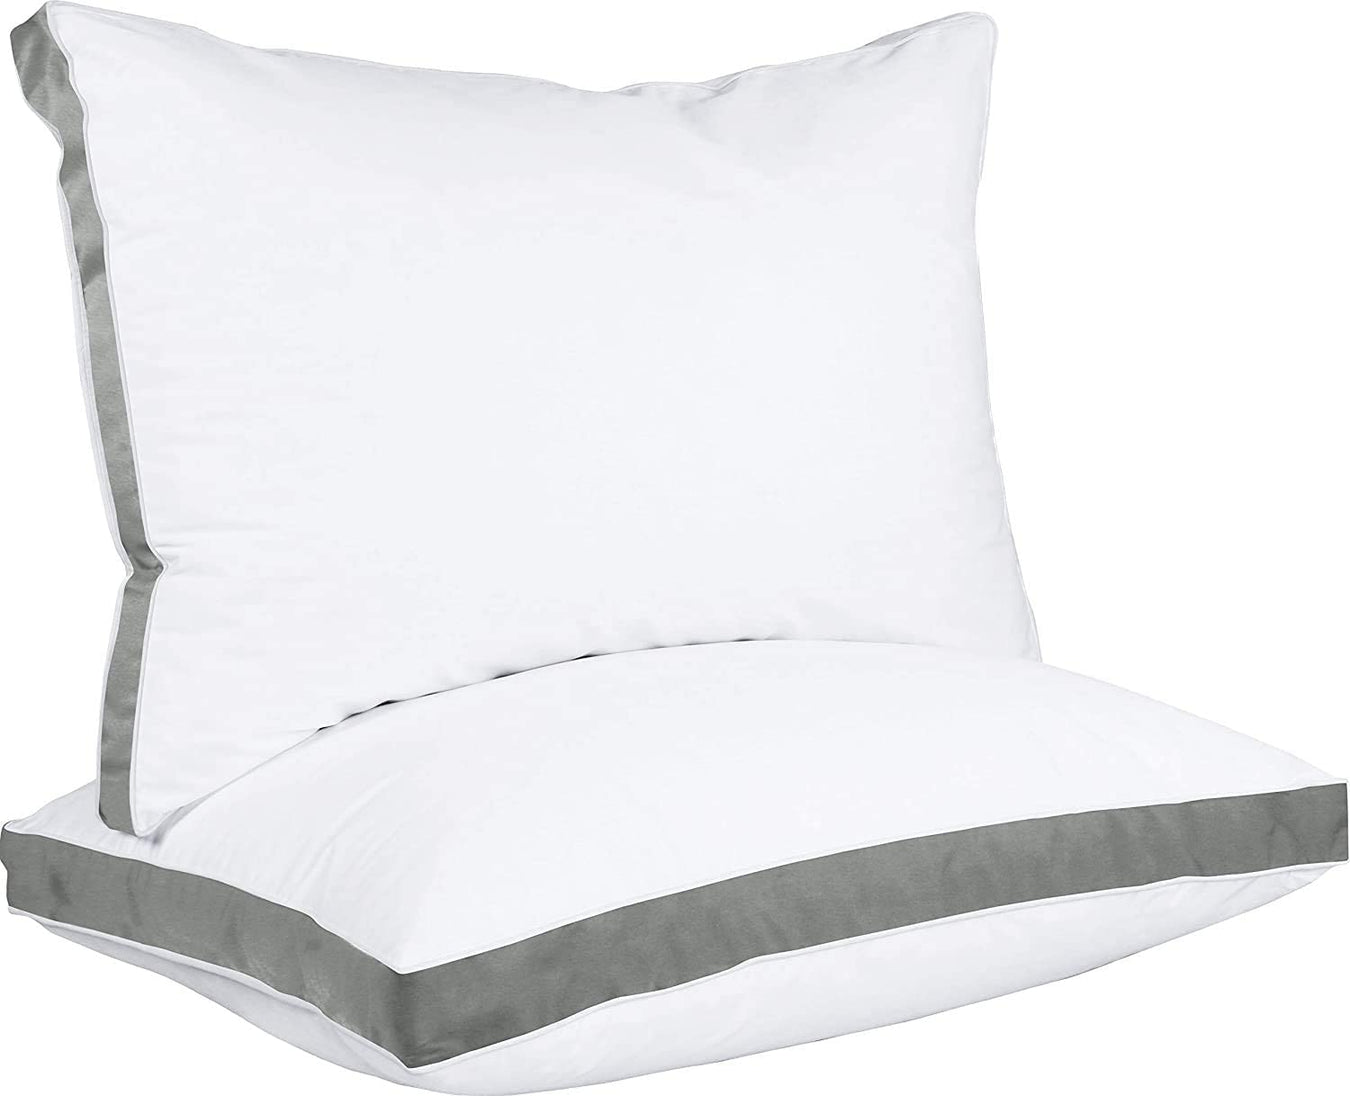  Franco Kids Bedding Super Soft Microfiber Reversible Pillowcase,  20 in x 30 in, Pokemon : Home & Kitchen